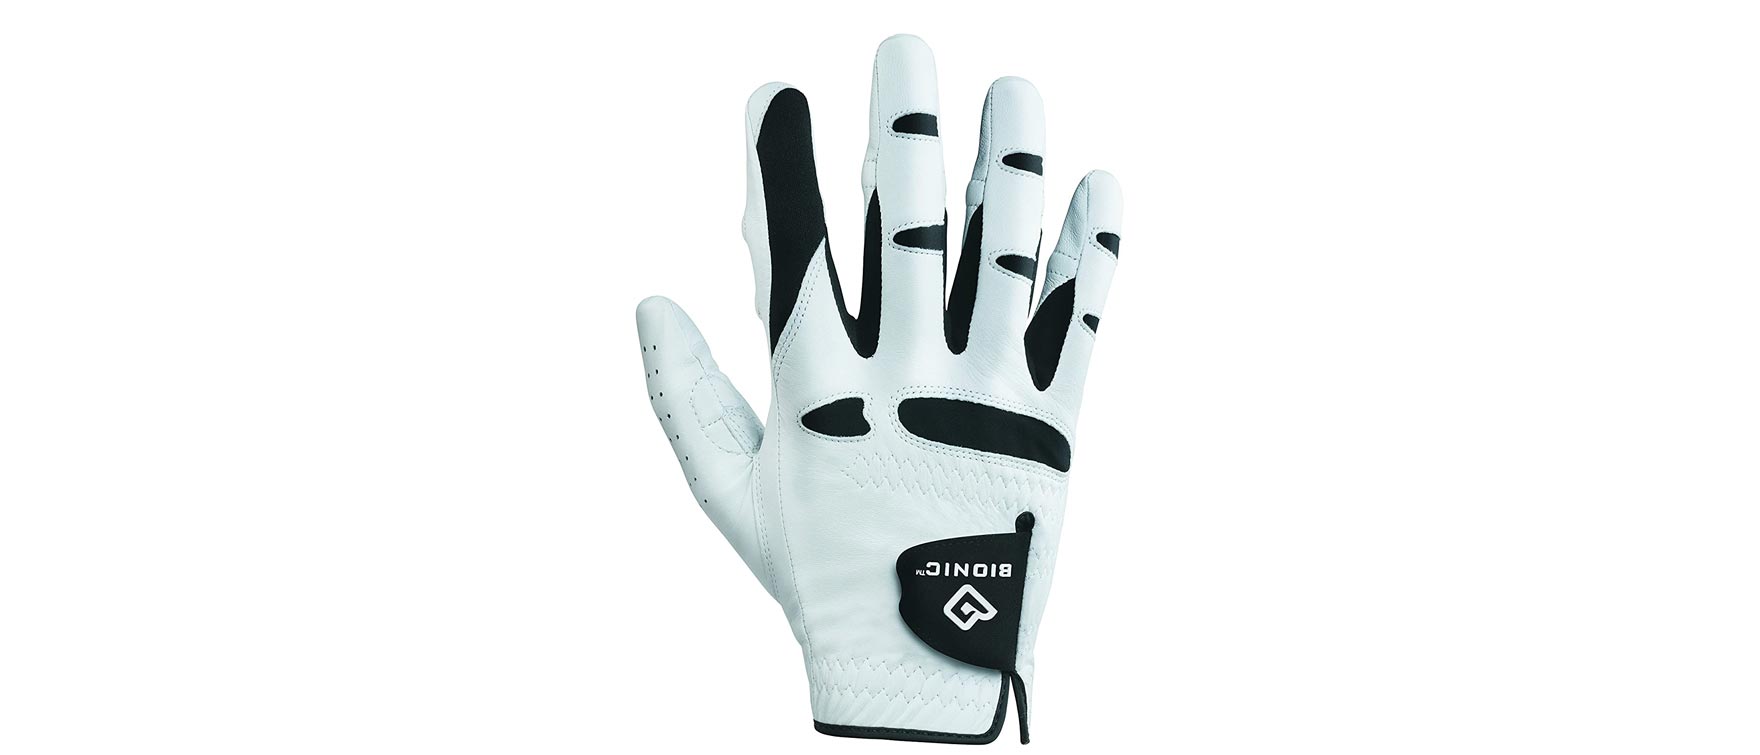 6. BIONIC Gloves StableGrip Golf Glove